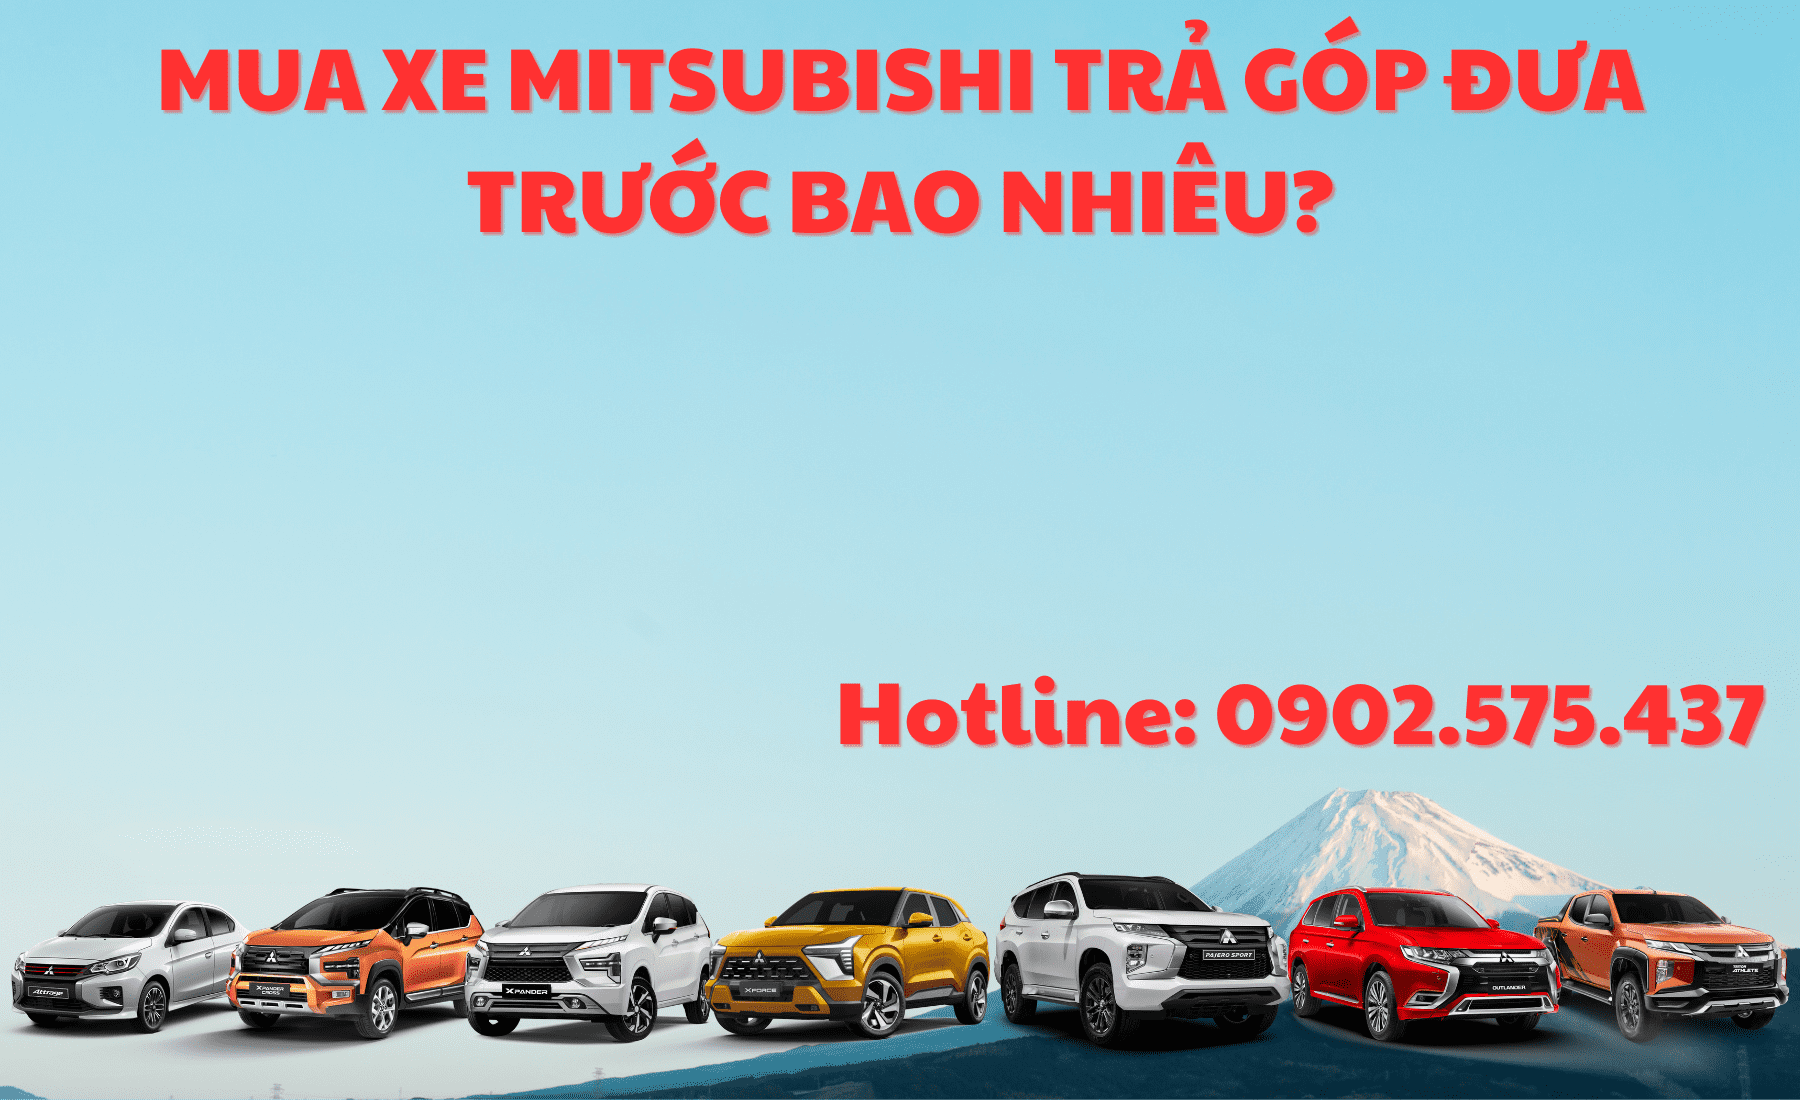 Mua xe Mitsubishi Trả Góp Đưa Trước Tối Thiểu Bao Nhiêu? | Hotline: 0902 575 437